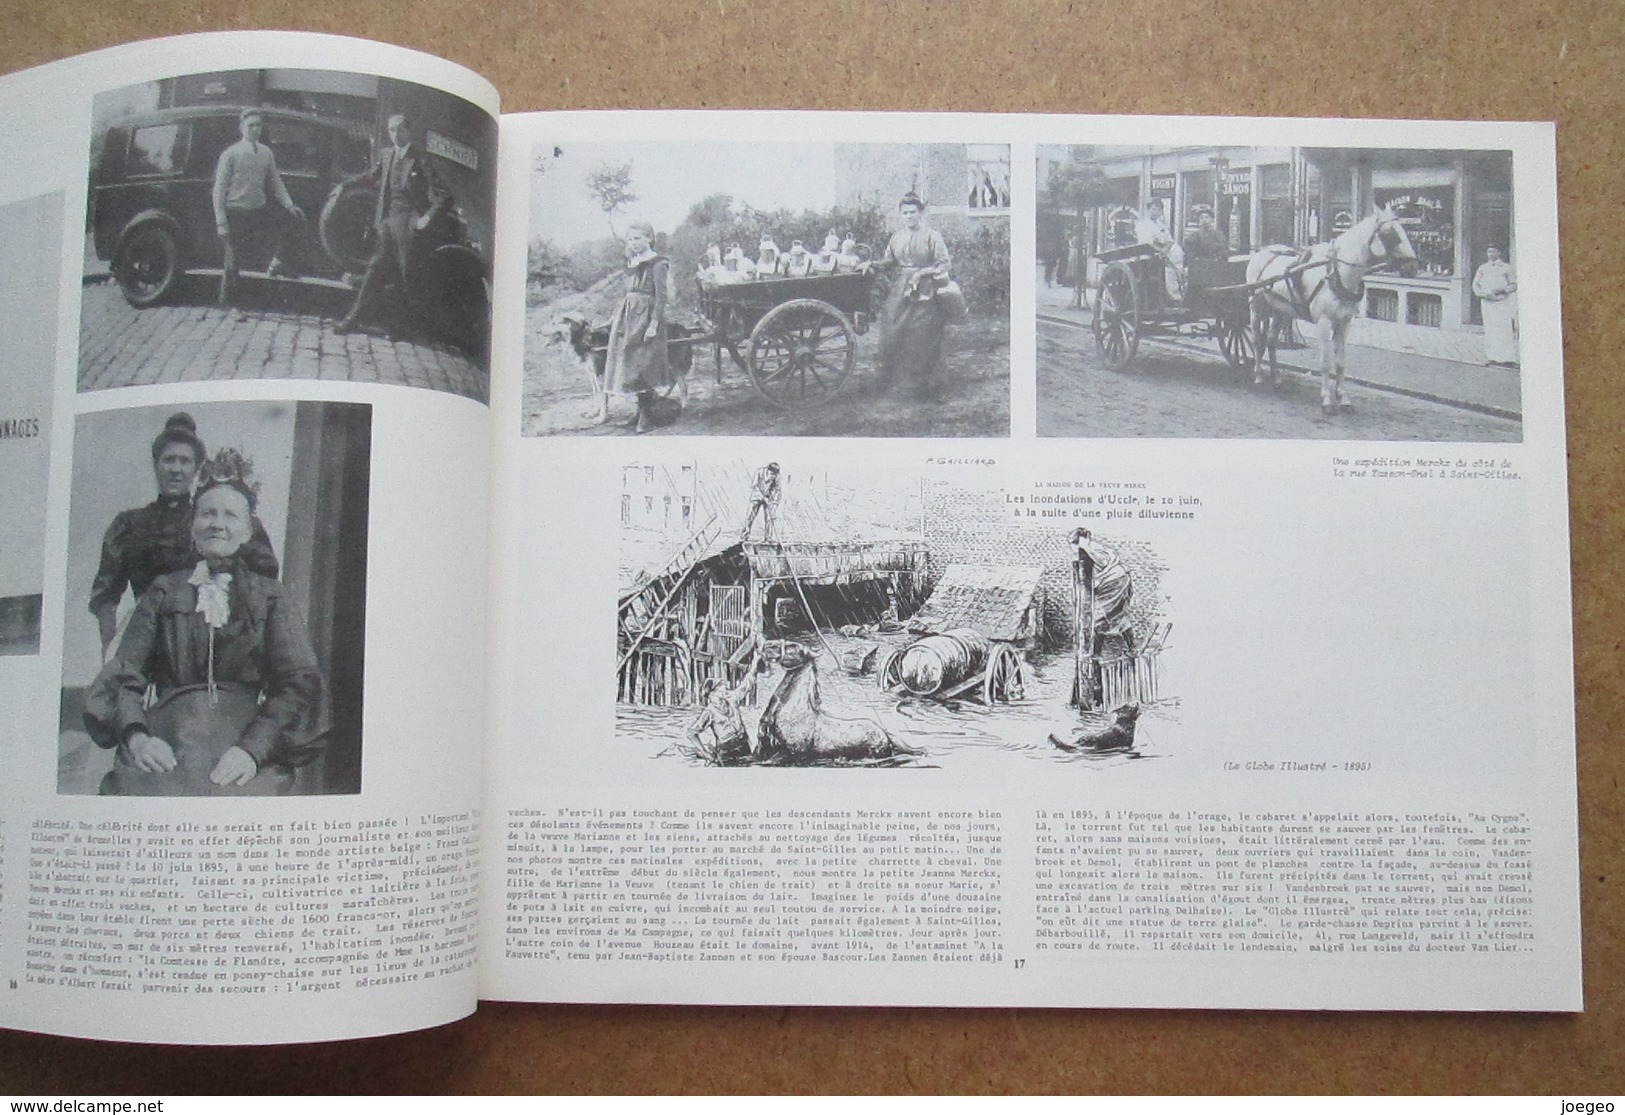 Uccle - tiroirs aux souvenirs - Jacques Dubreucq - 2 volumes / Cartes Postales - Photographies - peintures - Journaux